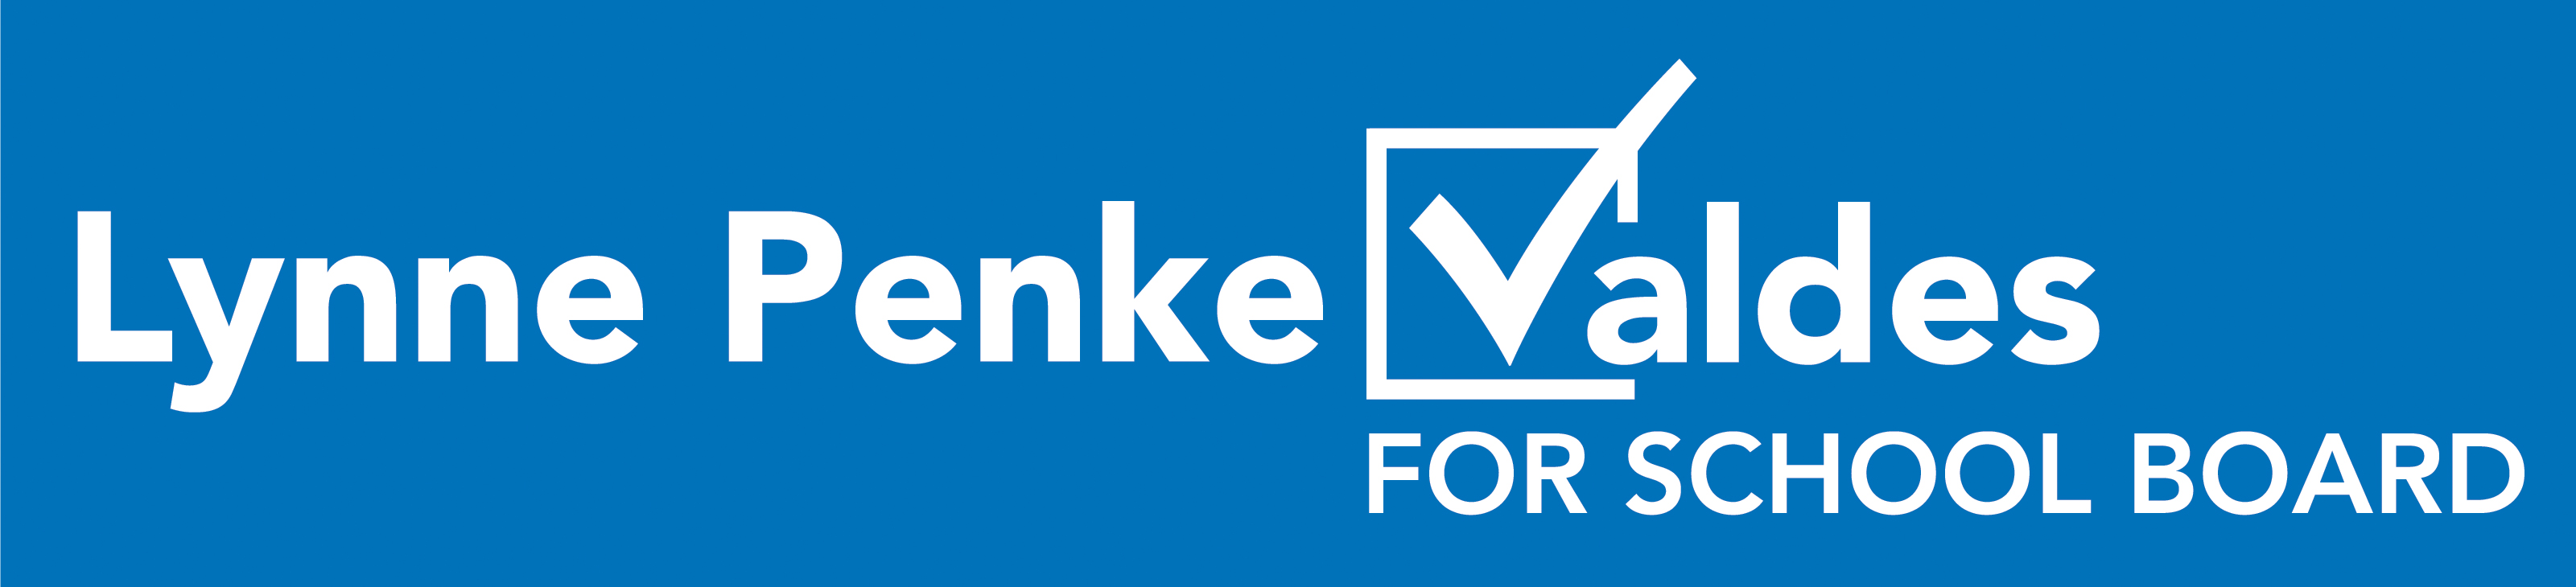 Lynne Penke Valdes Volunteer Committee logo